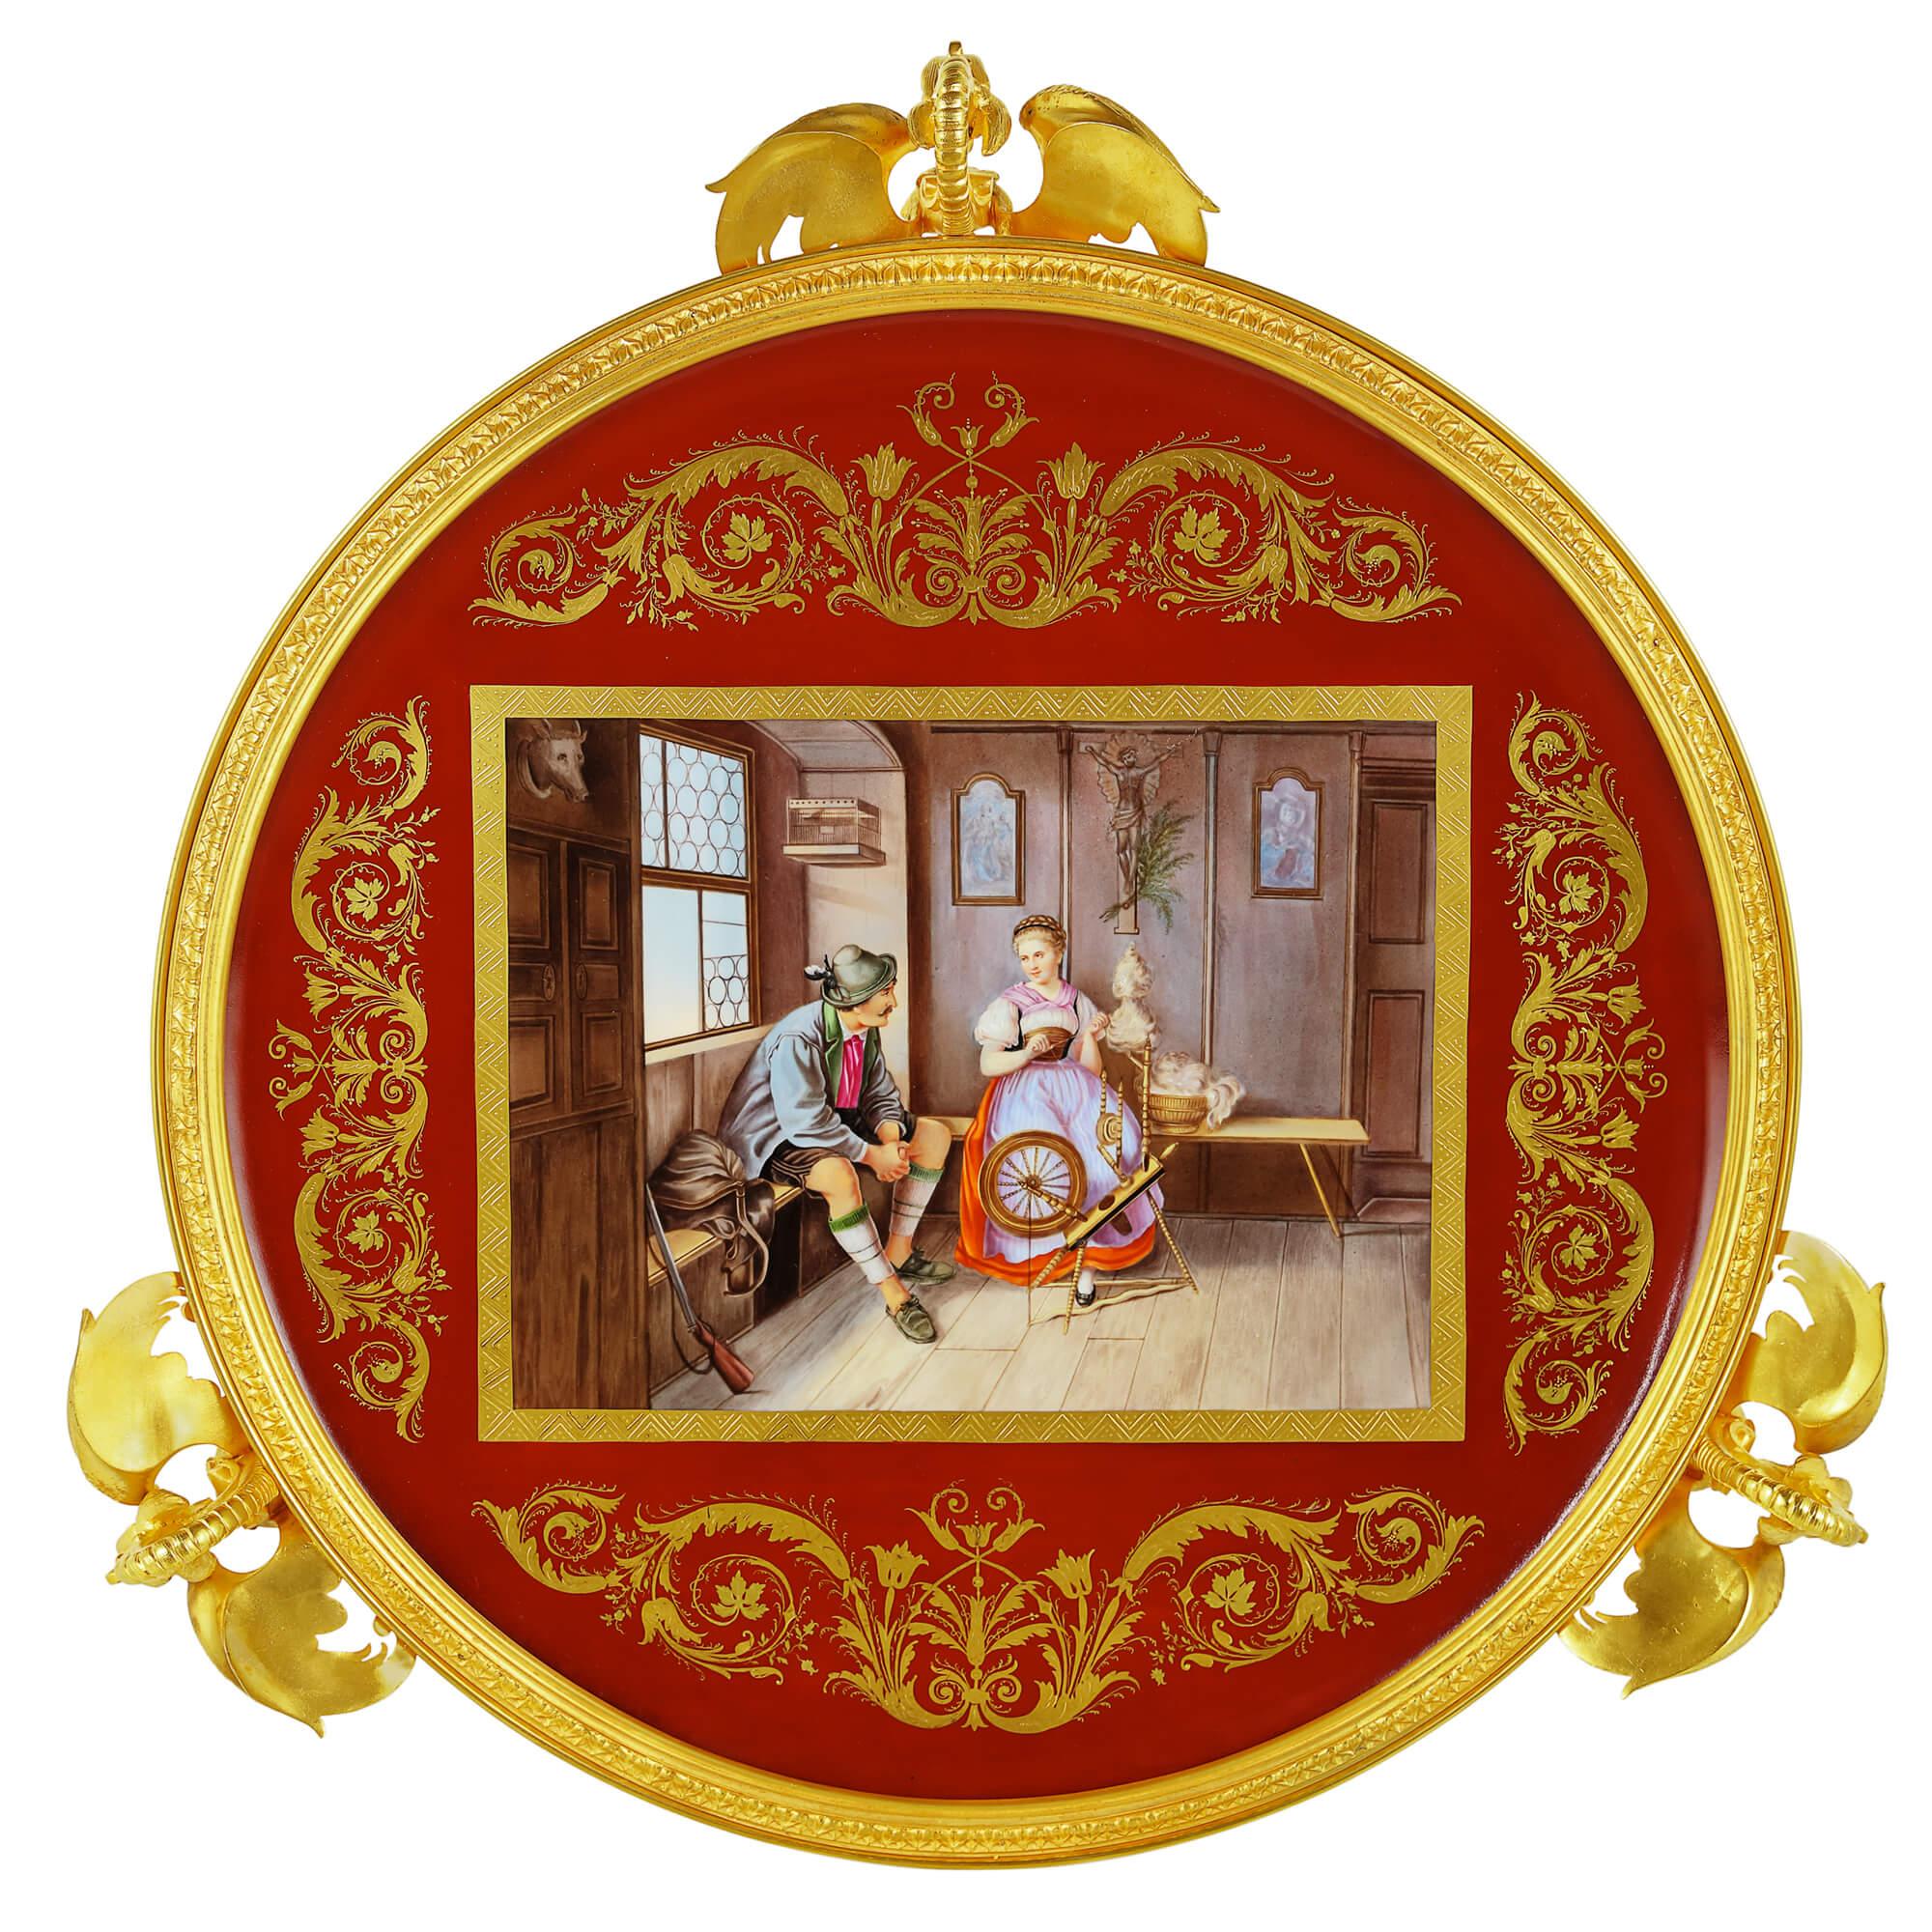 Runder Beistelltisch aus königlichem Wiener Porzellan und vergoldeter Bronze
Österreicher, um 1870 
Maße: Höhe 84cm, Durchmesser 56cm

Dieser runde Beistelltisch ist ein wahrhaft exquisites Designerstück, das sowohl in einem antiken als auch in